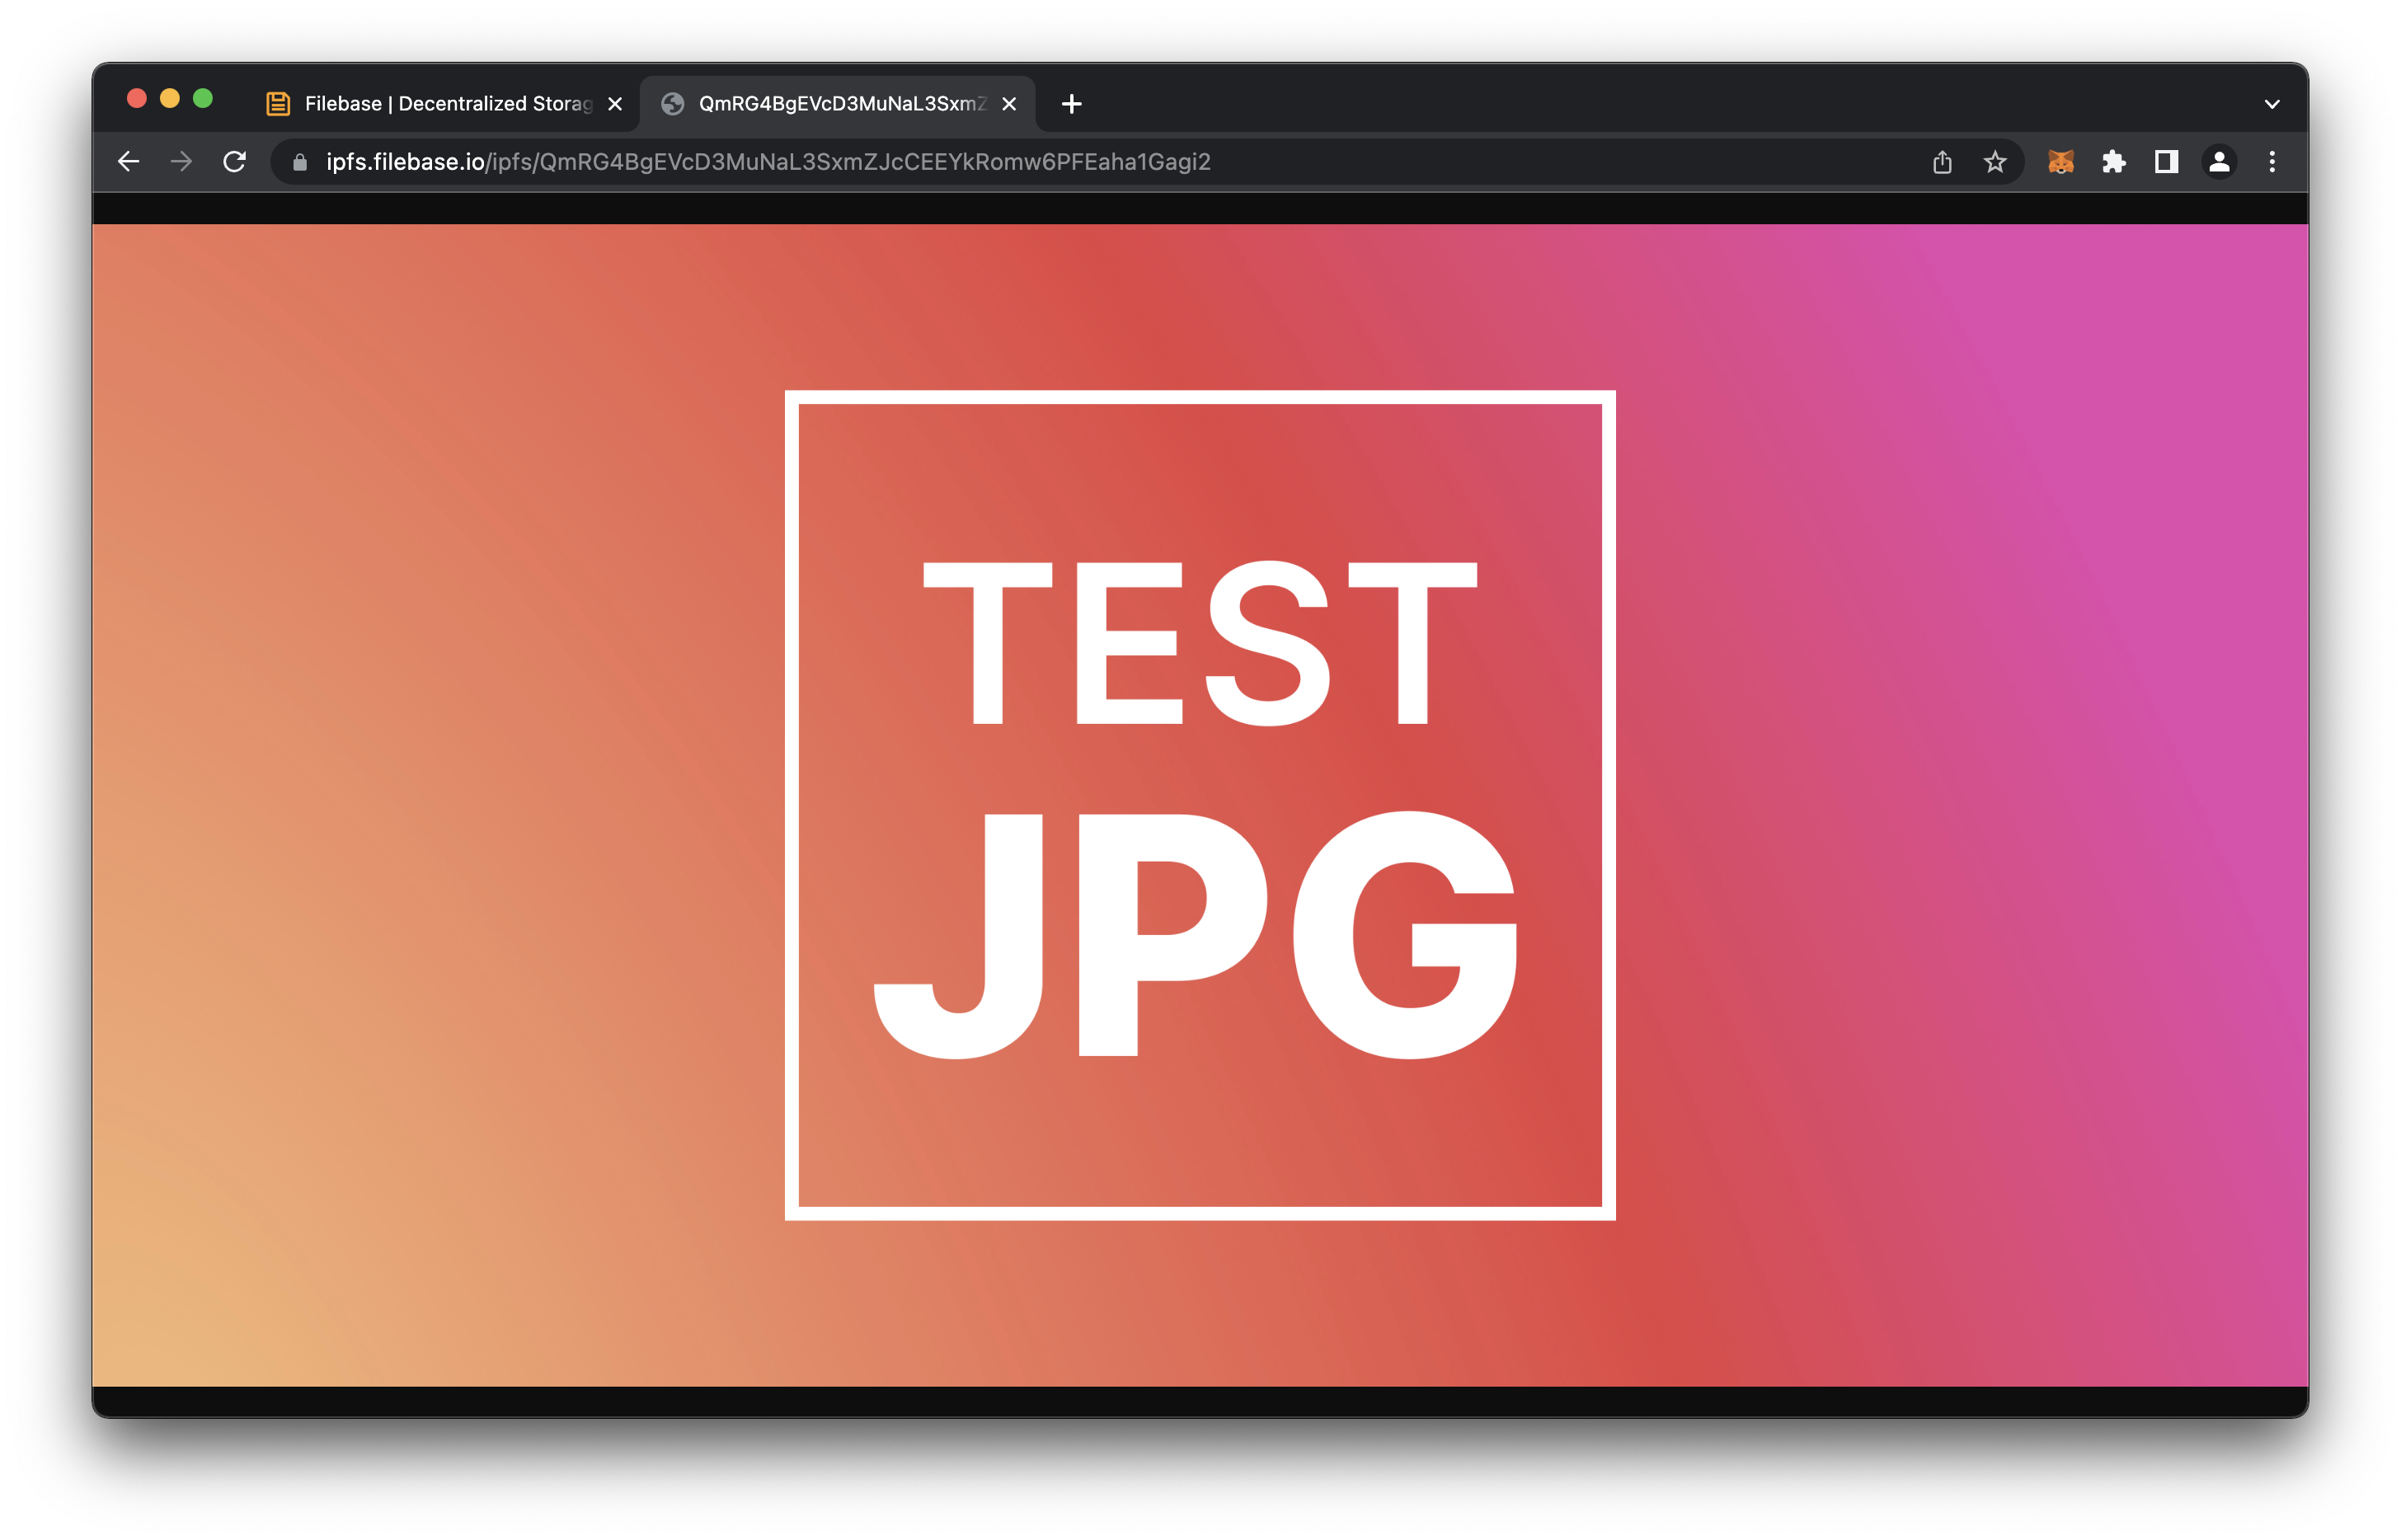 IPFS Test JPG